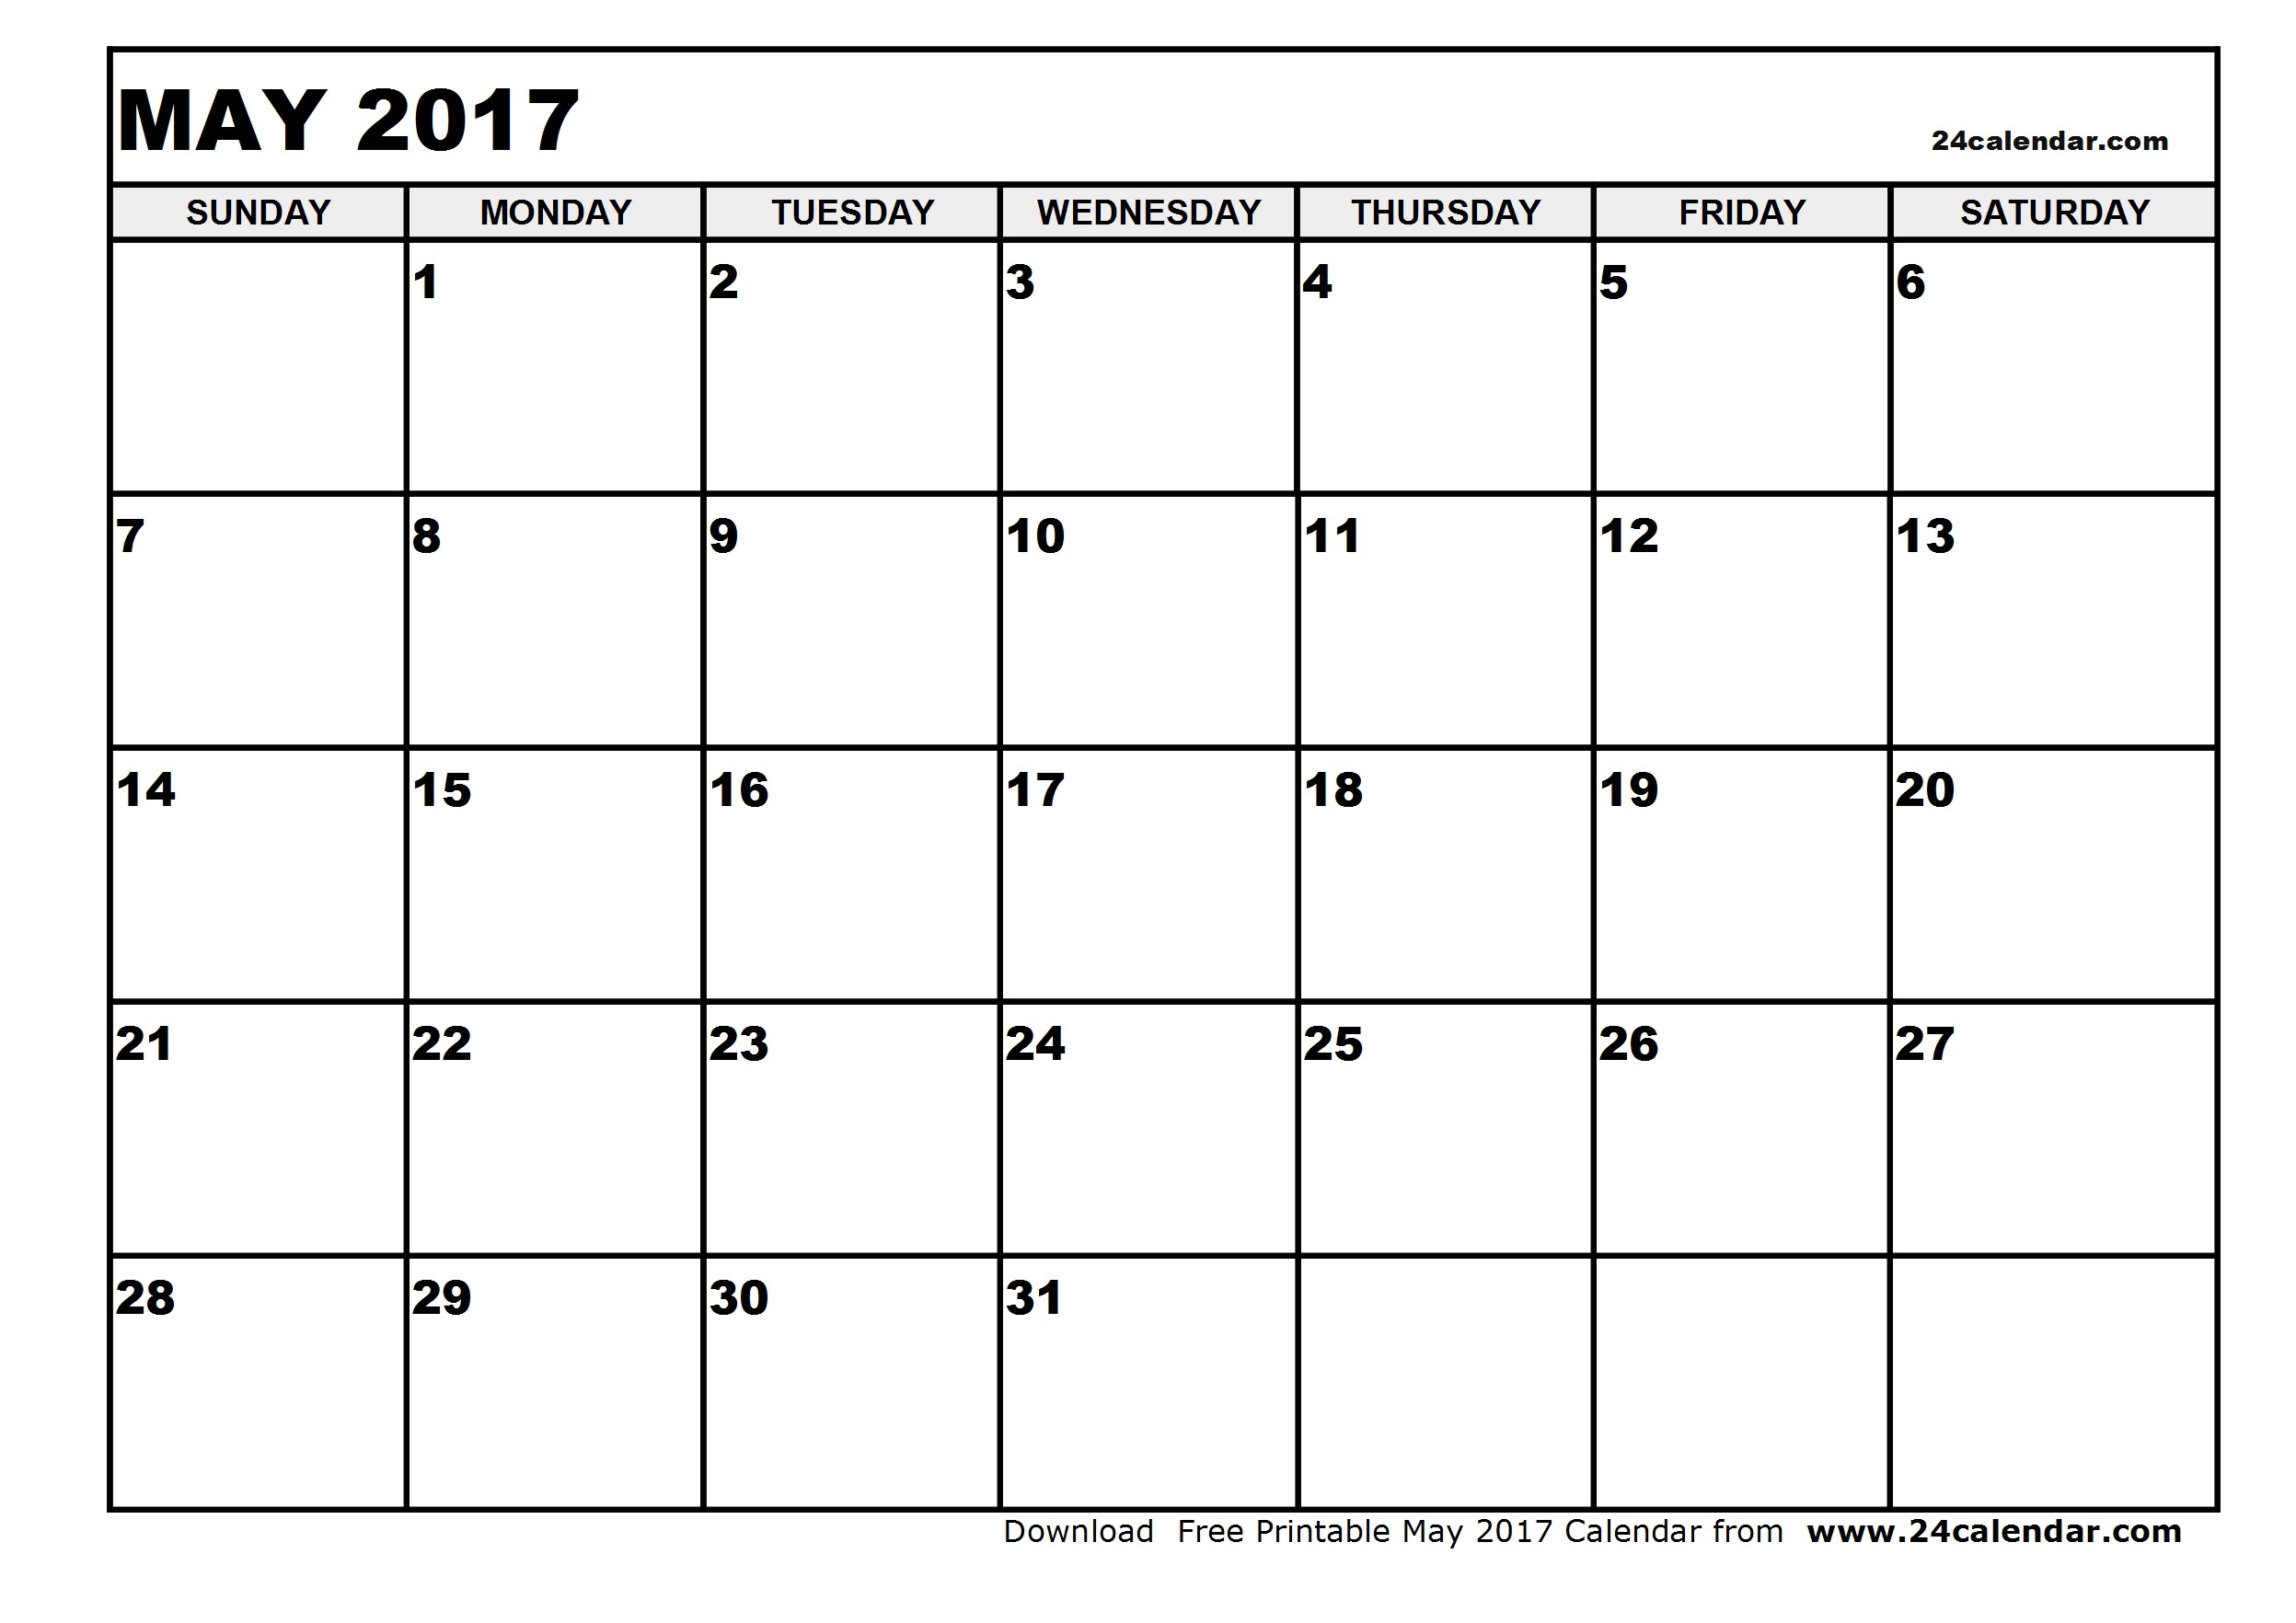 Blank May 2017 Calendar in Printable format